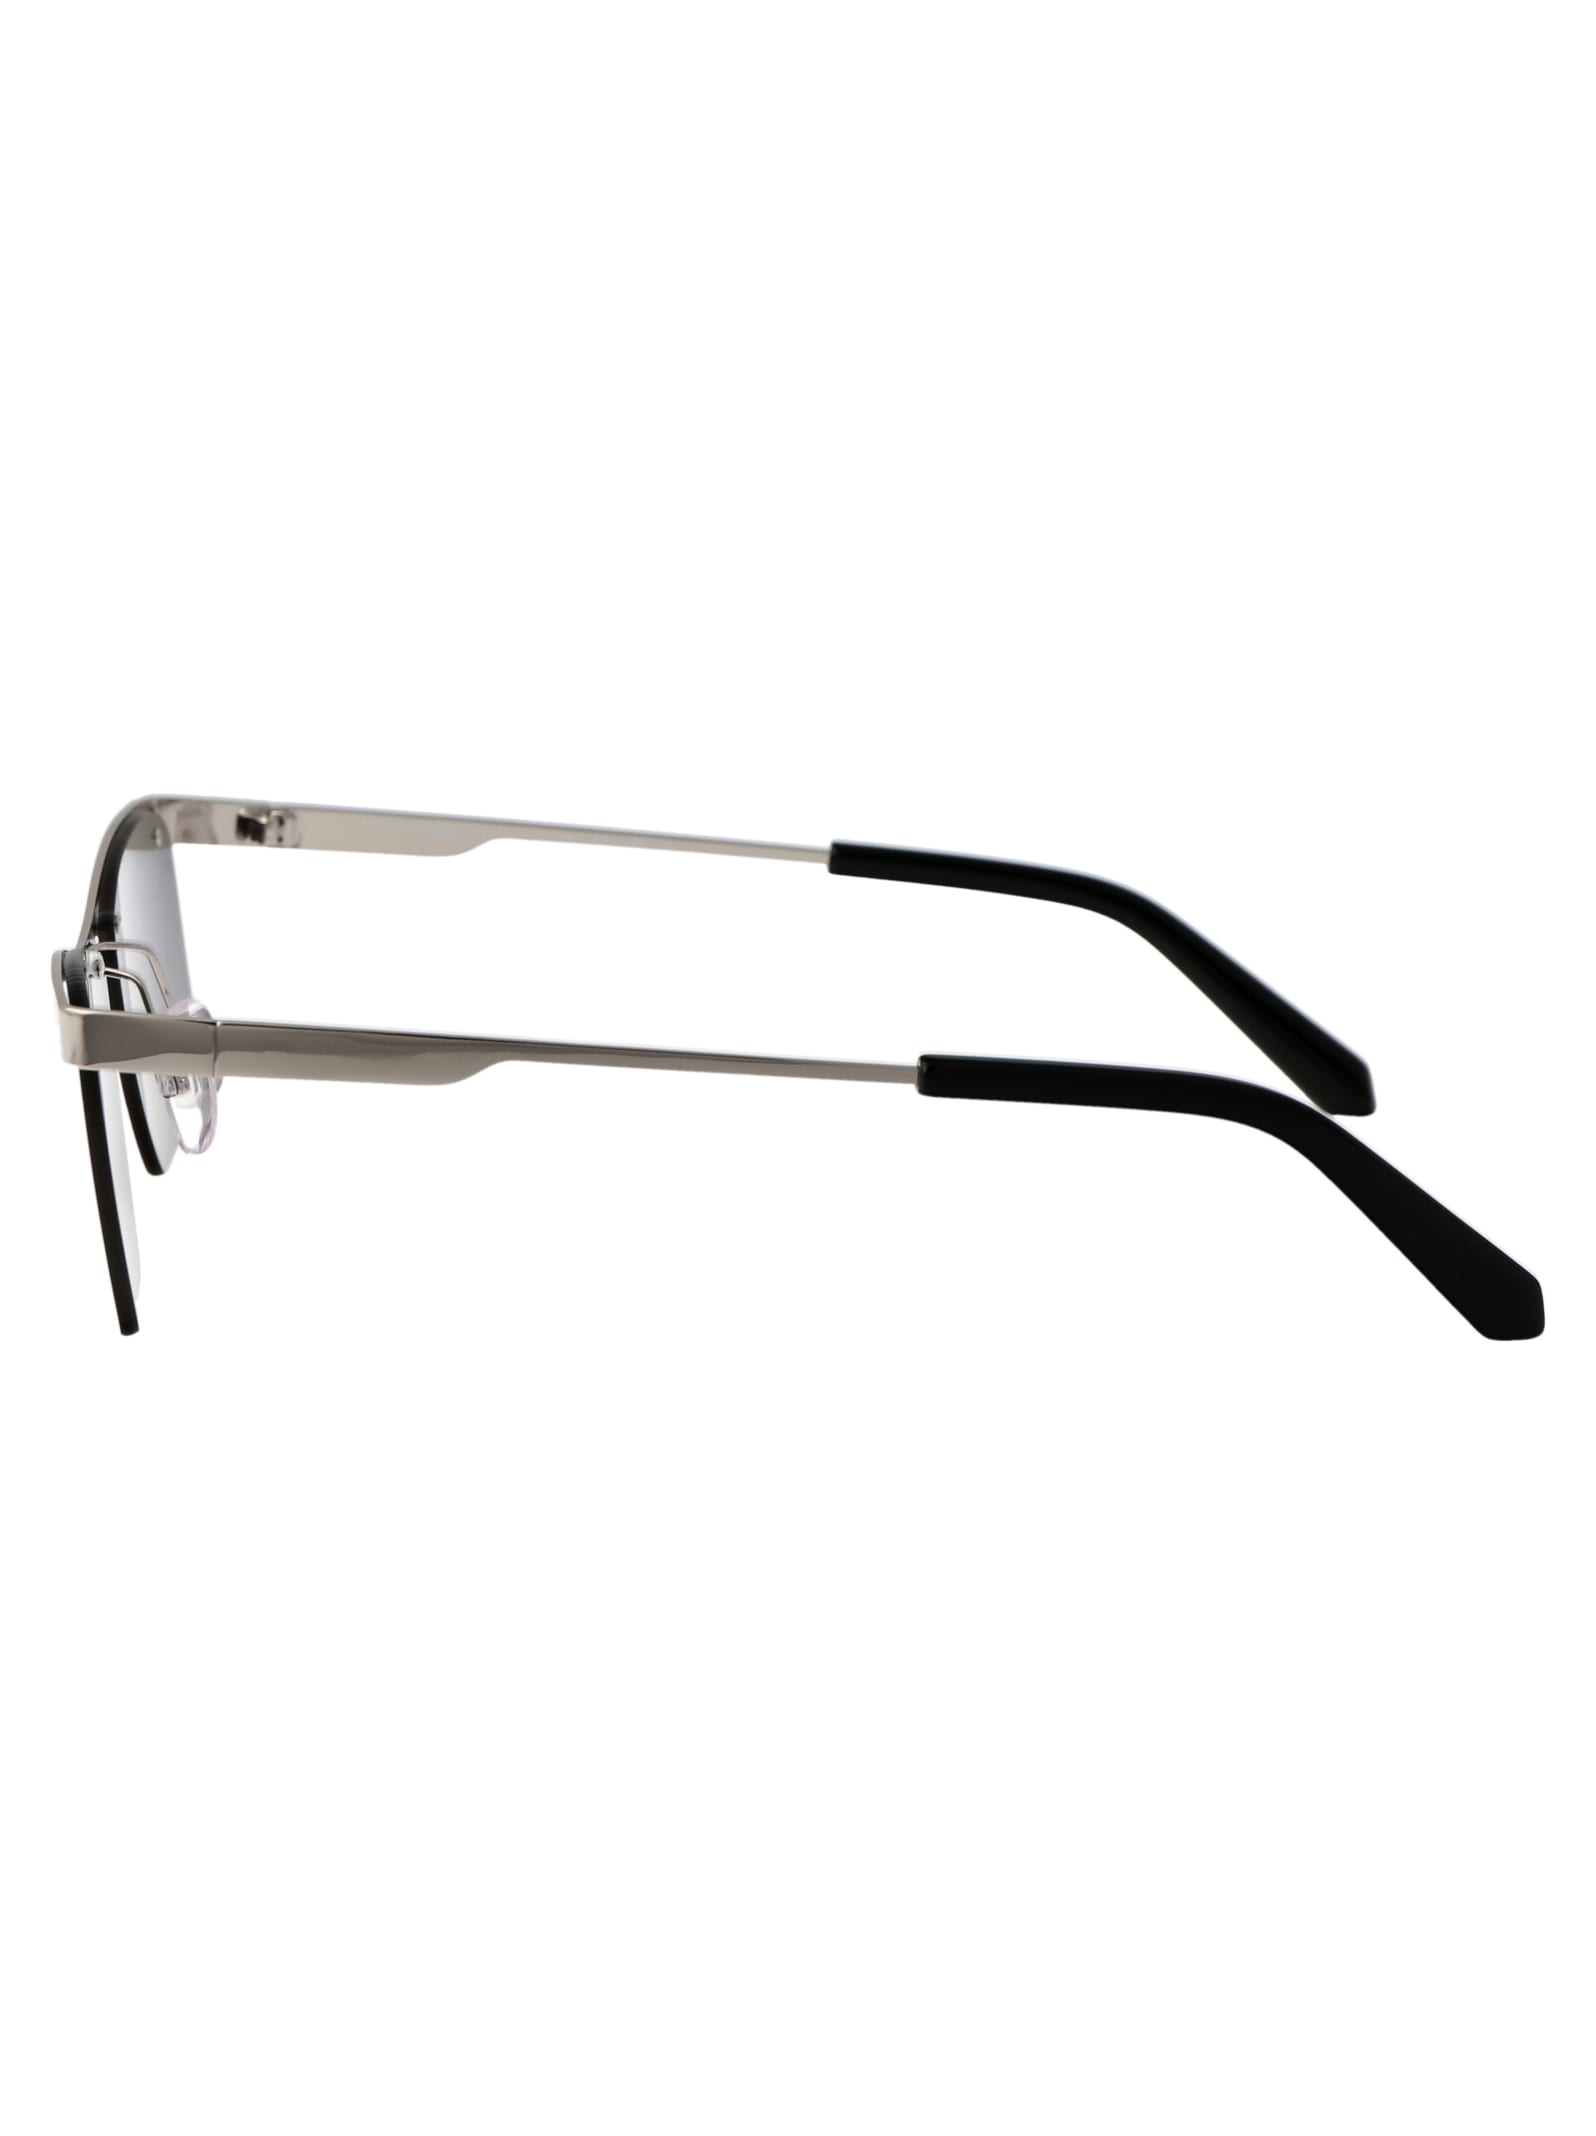 Shop Off-white Rimini Sunglasses In 7272 Silver